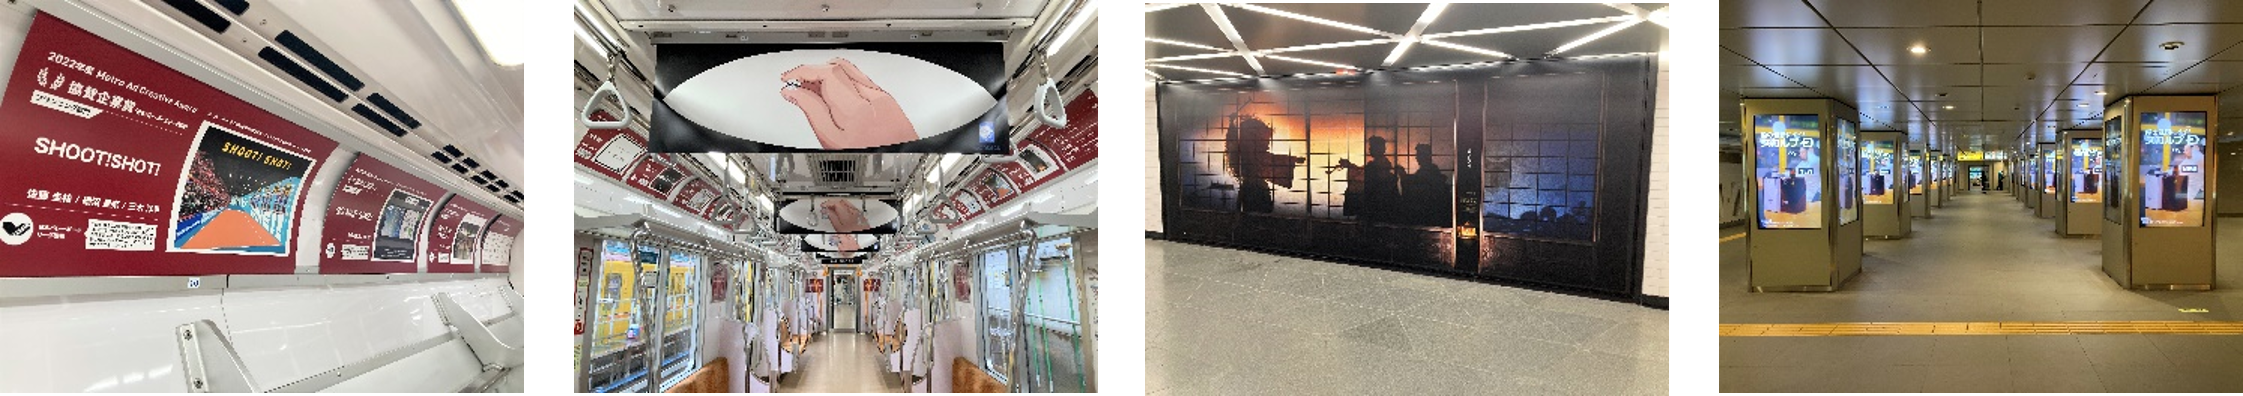 2022年度の受賞作を展示したギャラリートレイン・駅ばりポスターセット・駅縦型サイネージの様子